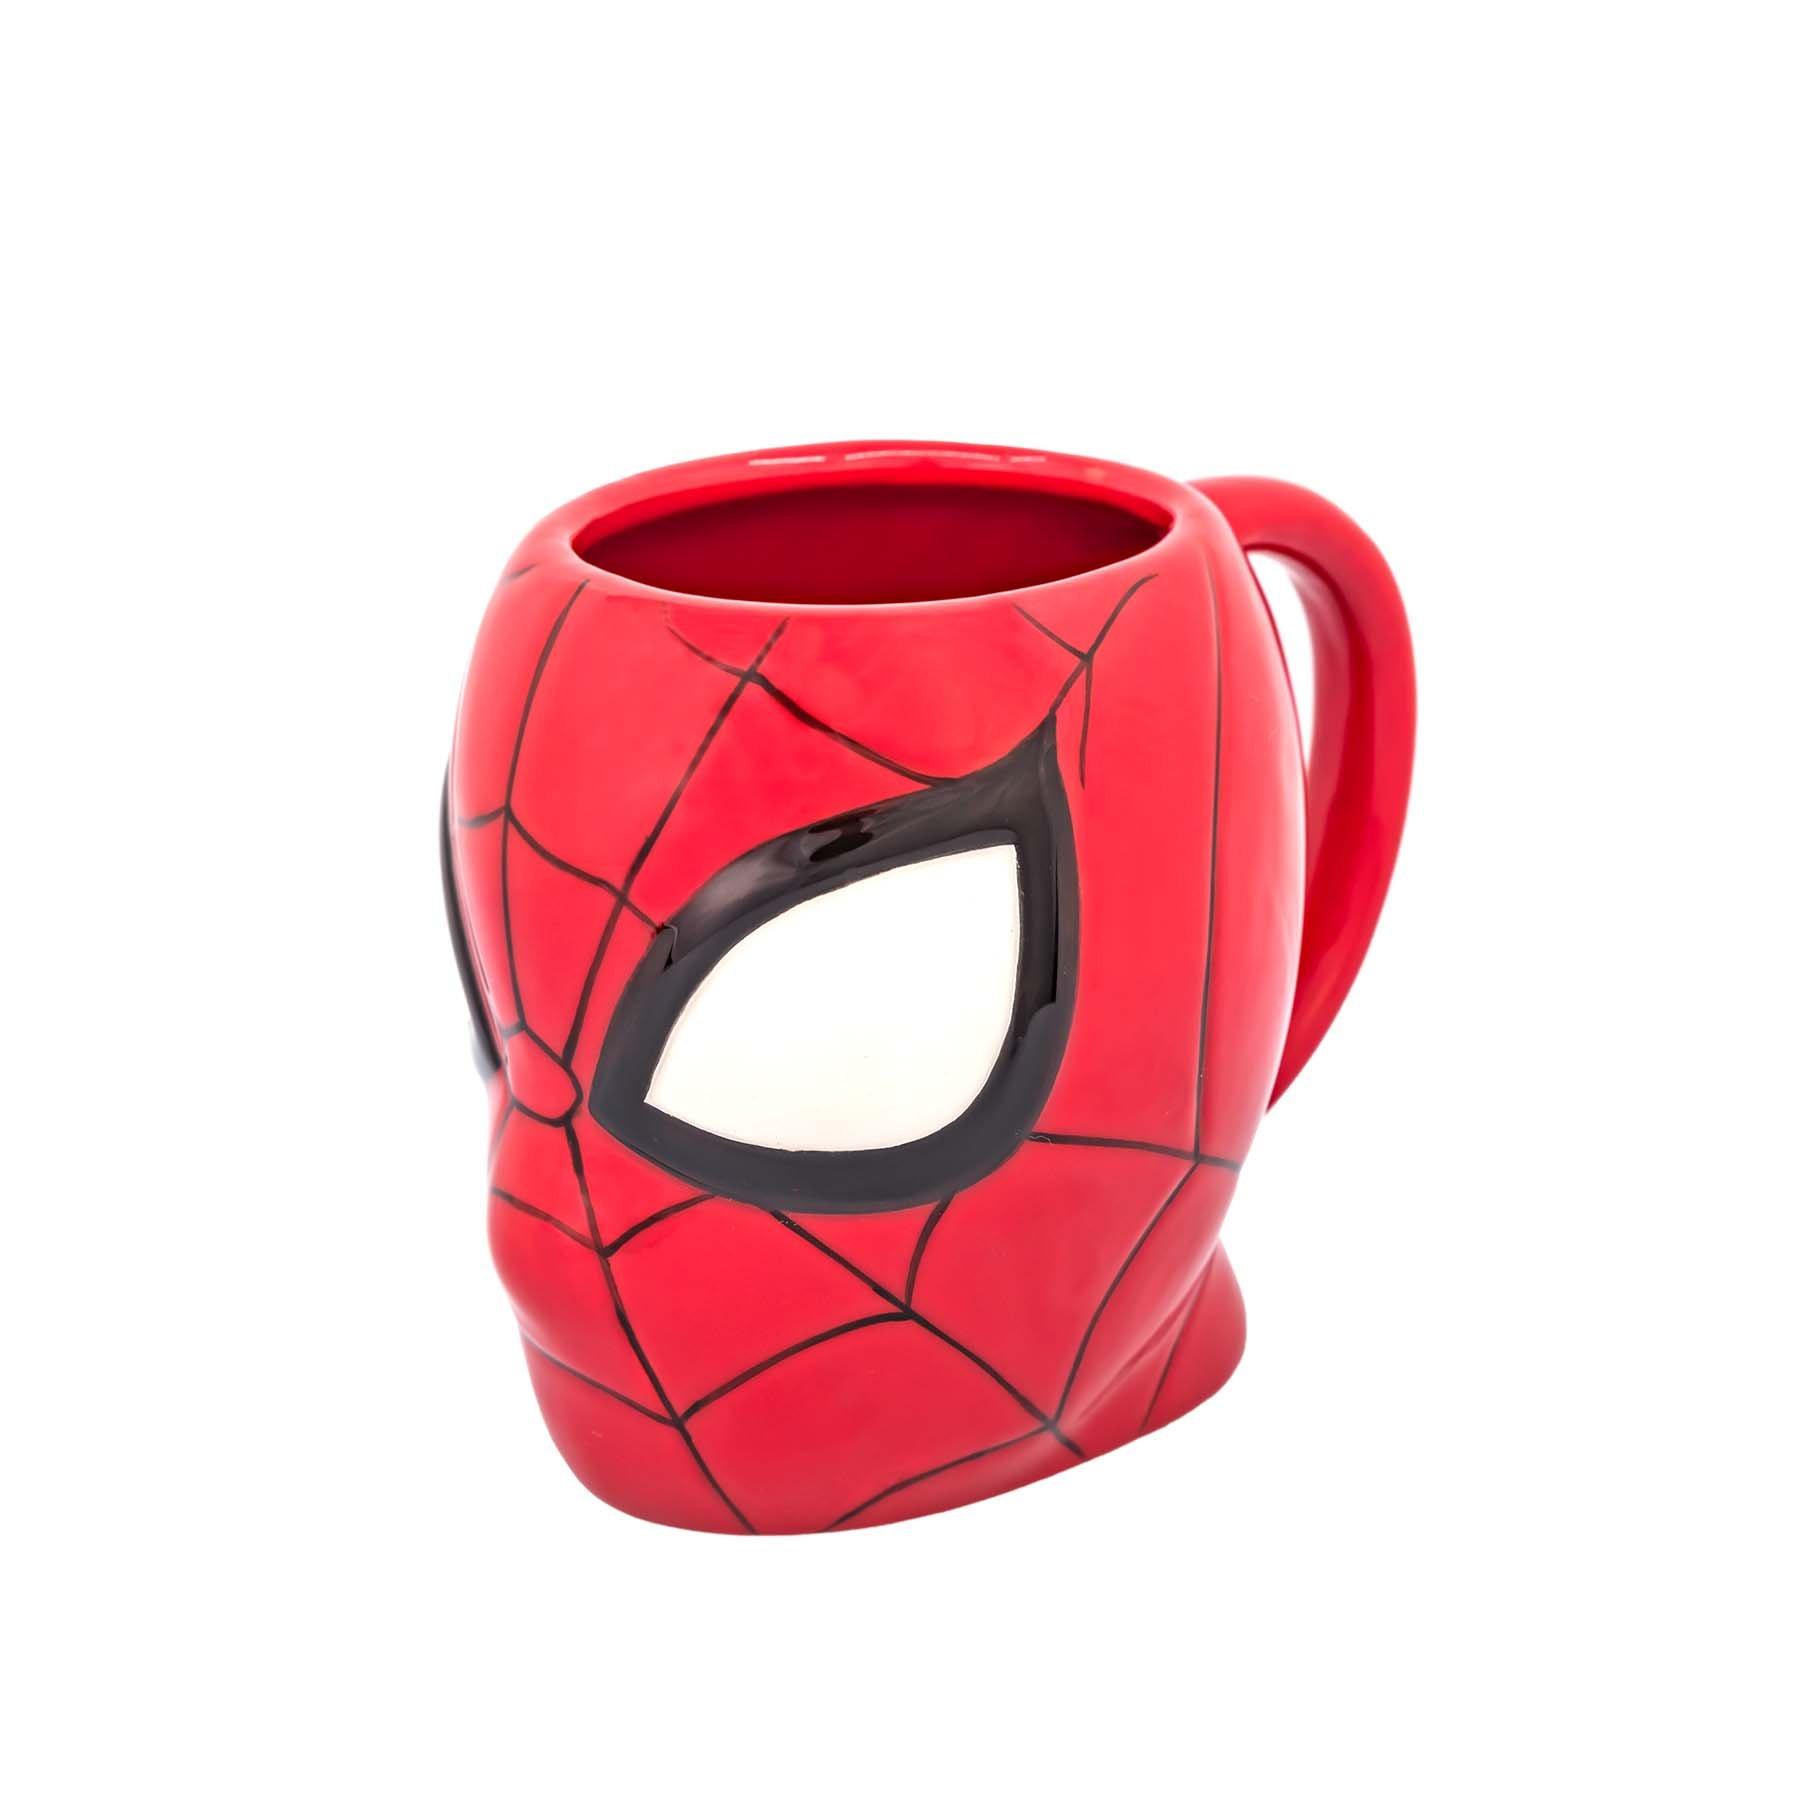 3D Spiderman mug *official* for fans